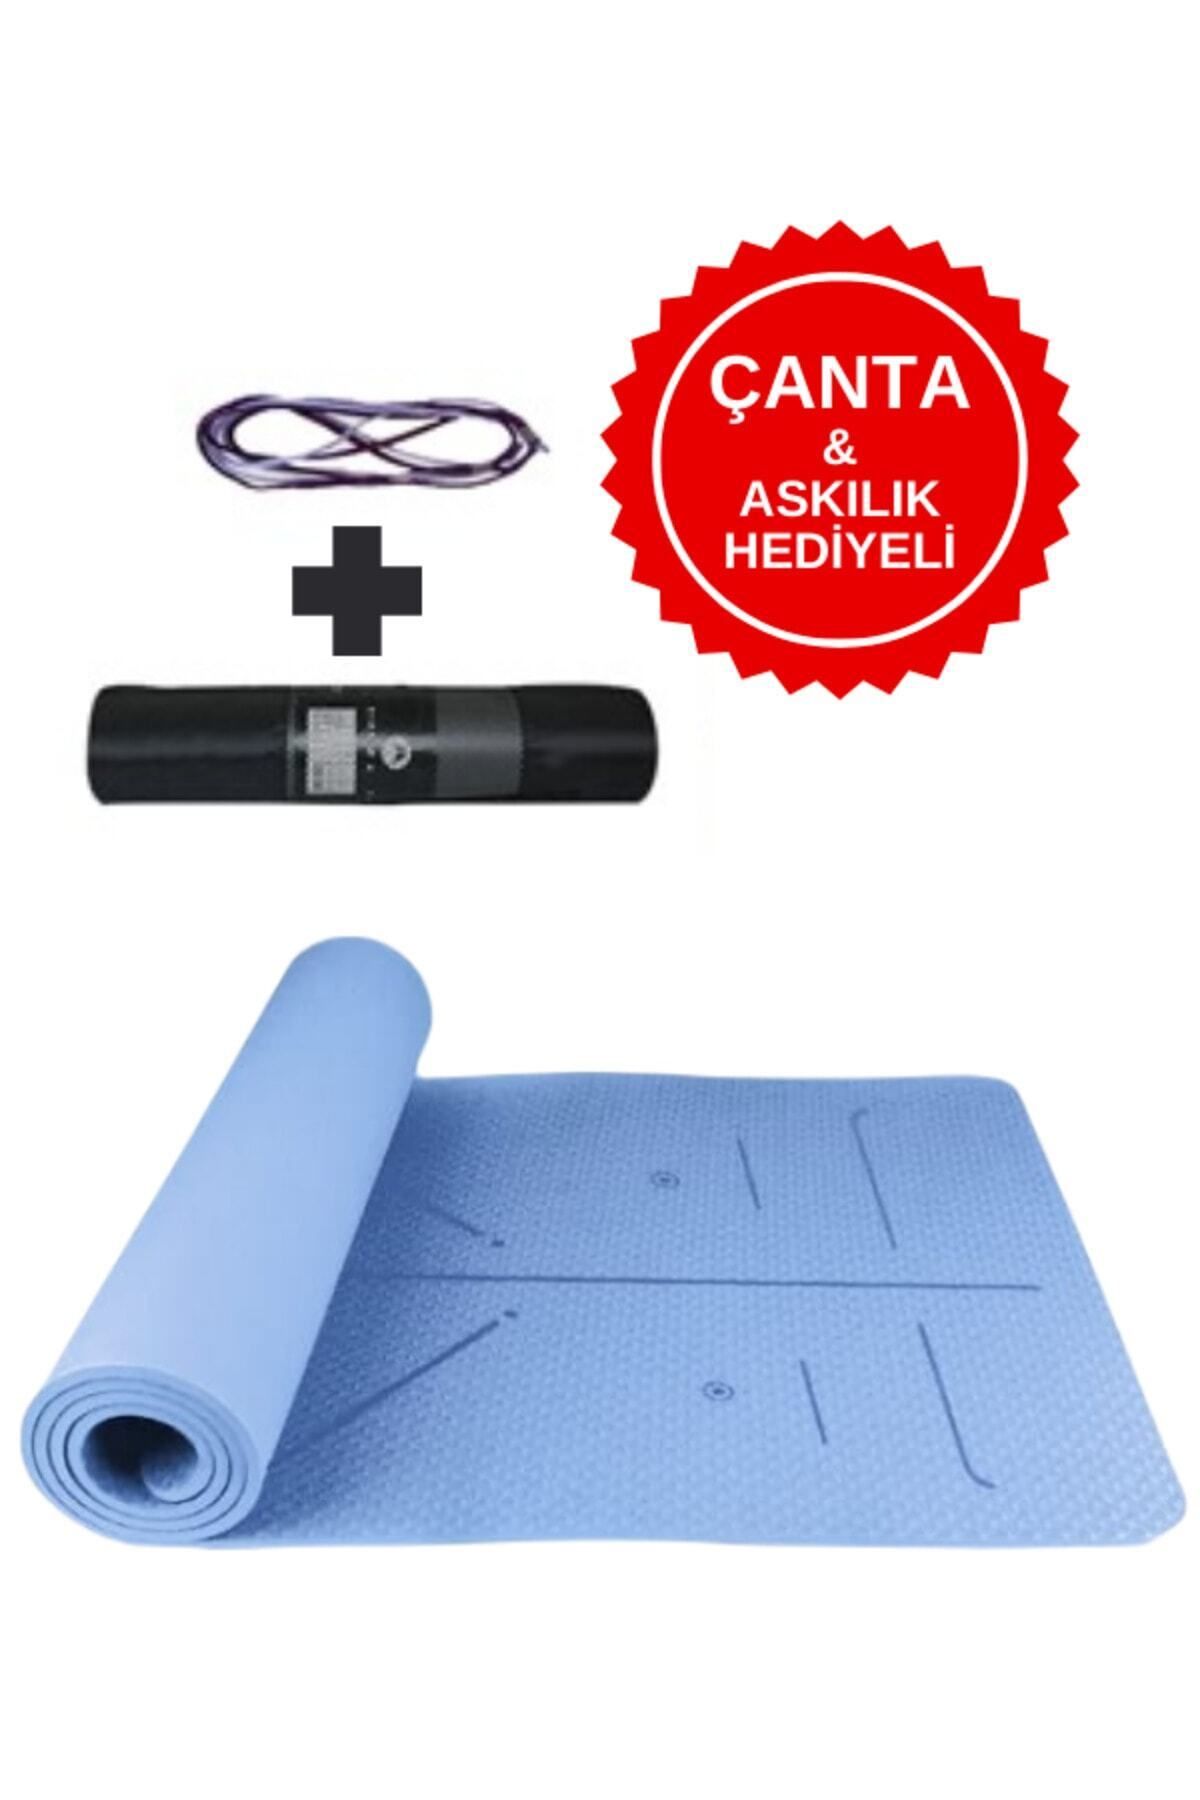 XTR Fitness Ekstra Konforlu Yoga Matı - 8mm Kalınlık, Ekolojik Tpe Pilates Egzersiz Minderi Mavi